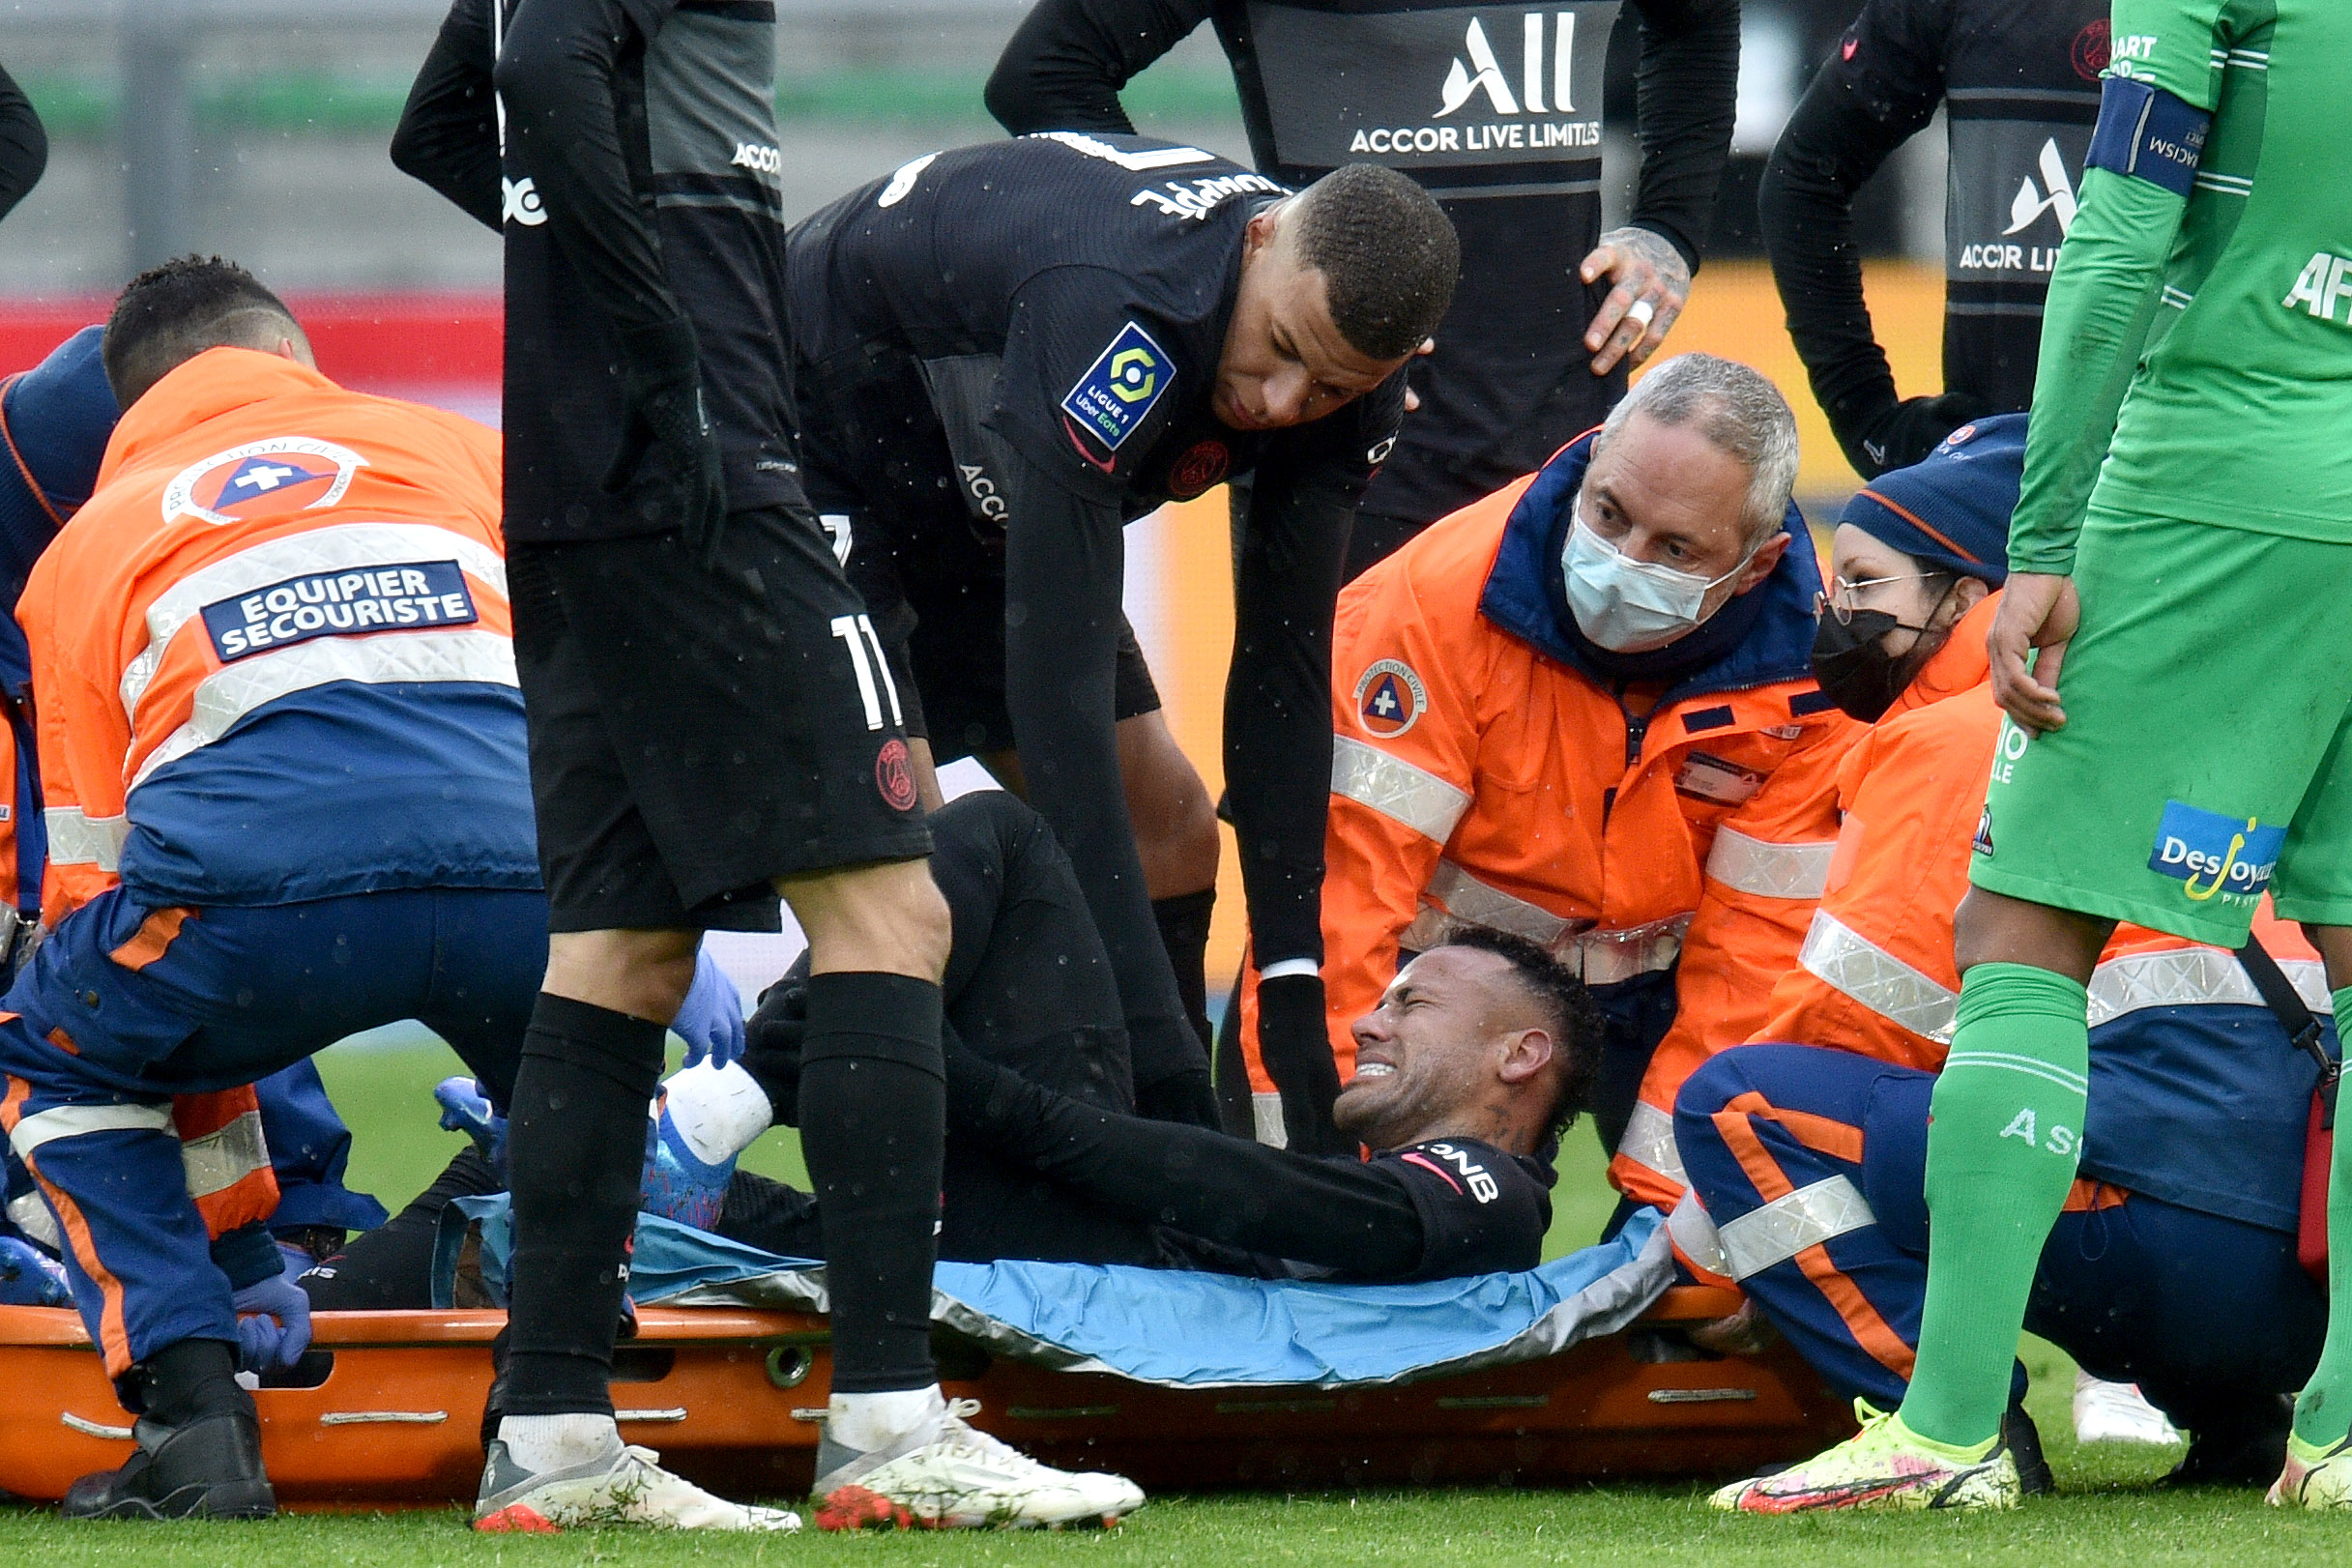 Neymar sofre lesão no tornozelo e sai chorando de campo em jogo do PSG